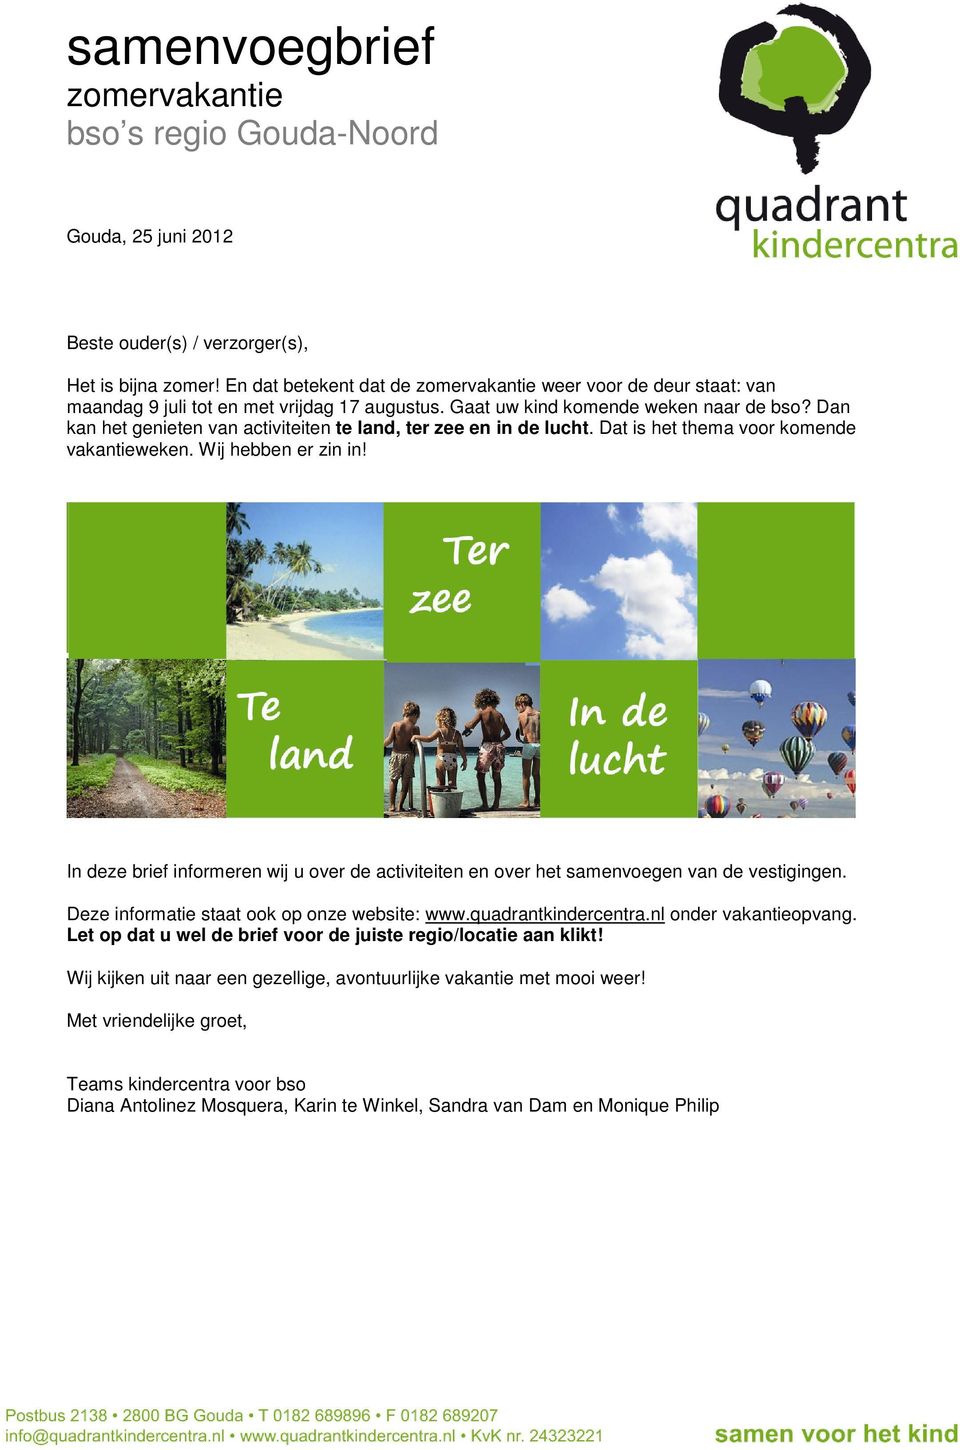 In deze brief informeren wij u over de activiteiten en over het samenvoegen van de vestigingen. Deze informatie staat ook op onze website: www.quadrantkindercentra.nl onder vakantieopvang.